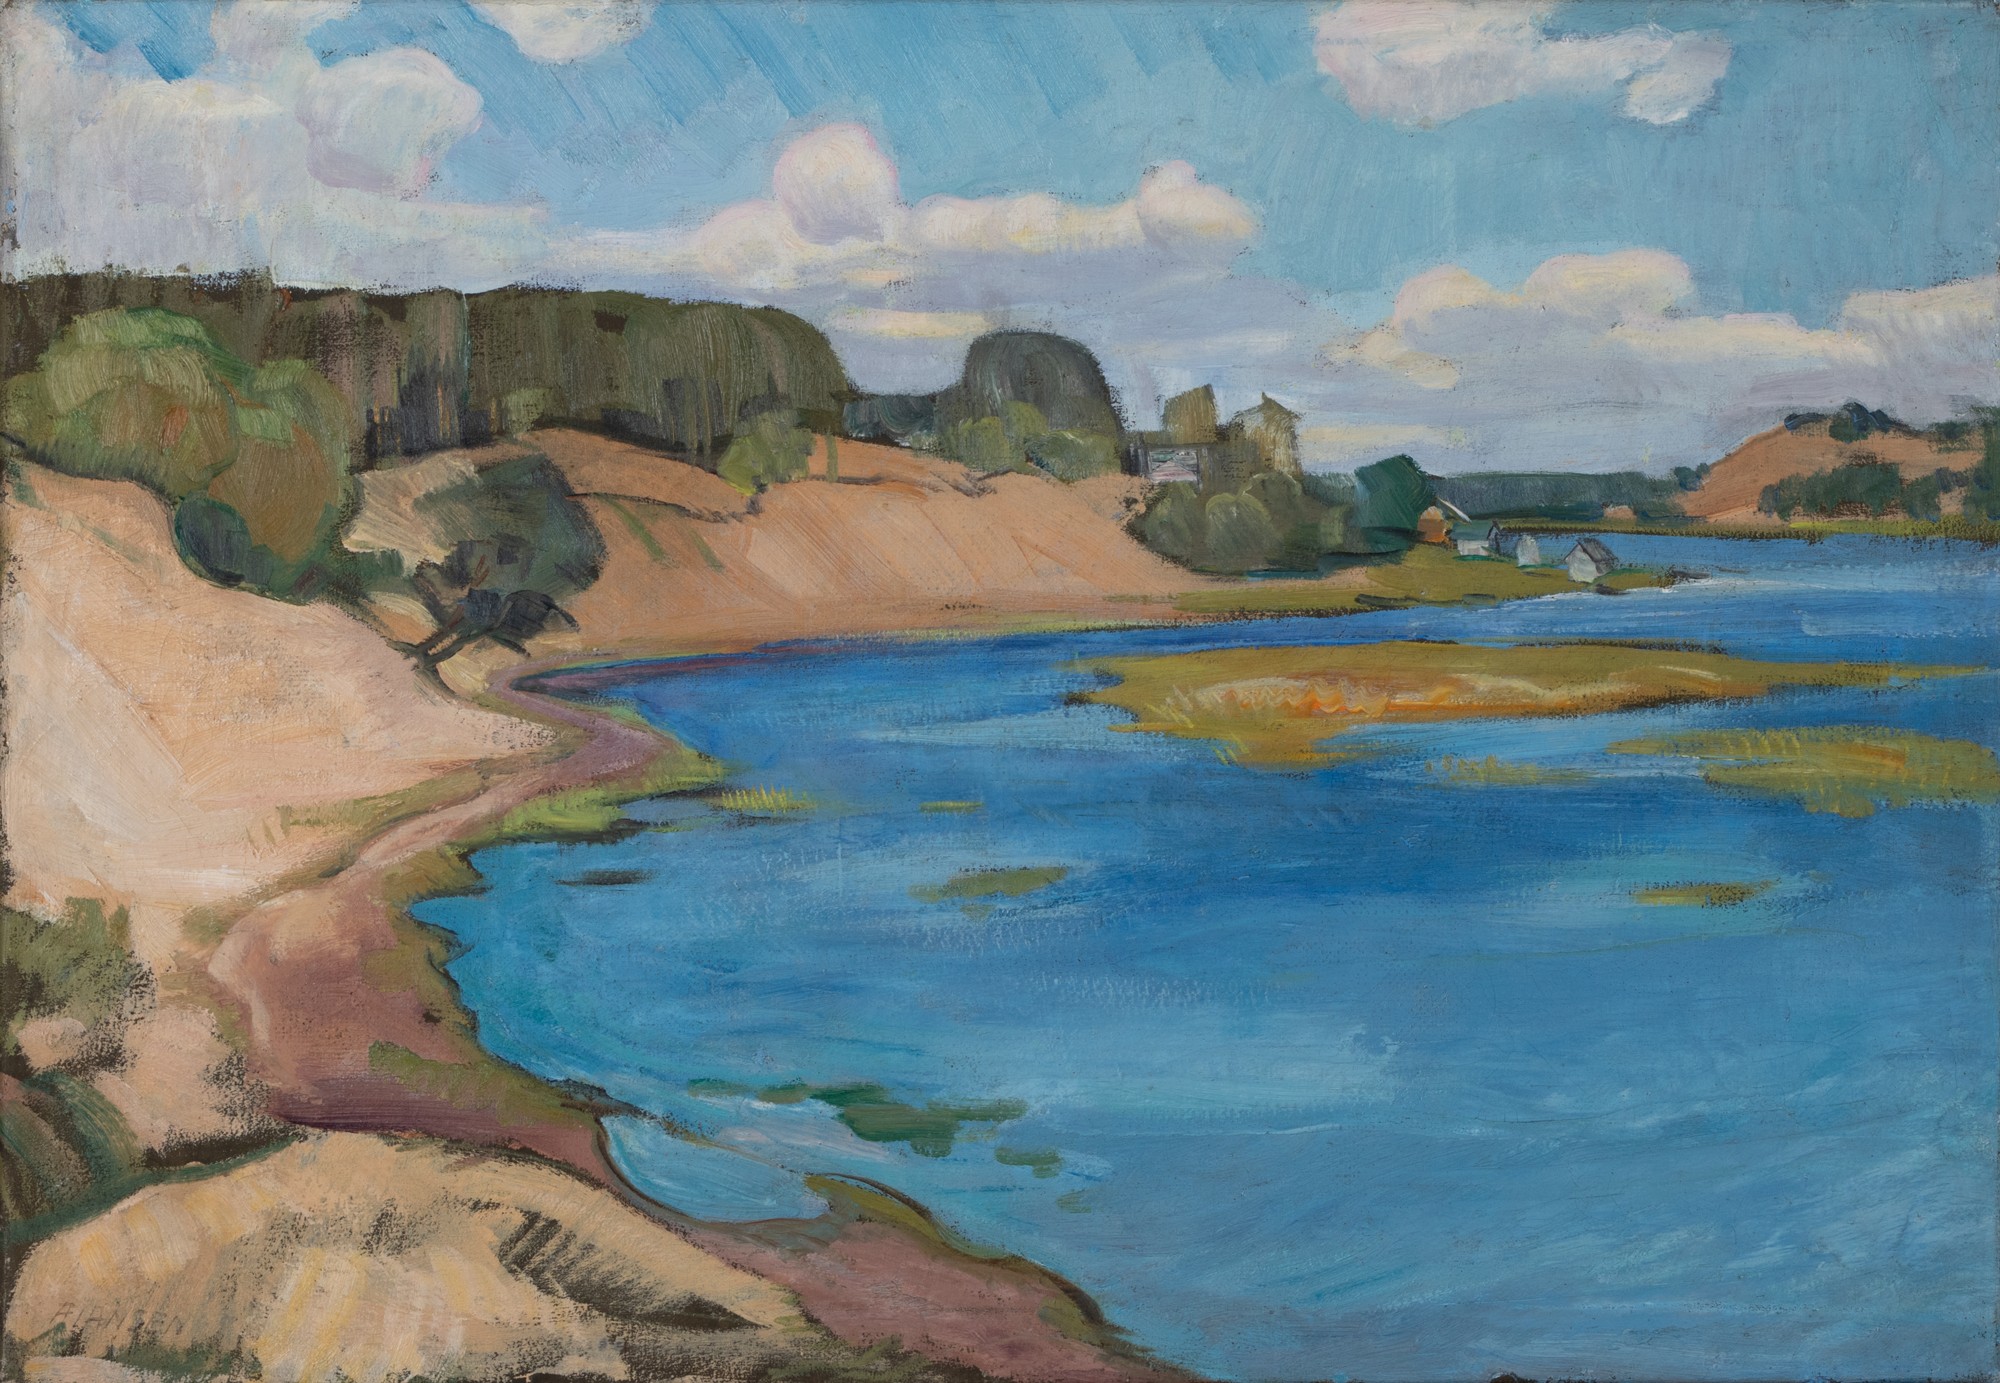 August Jansen "River Landscape"